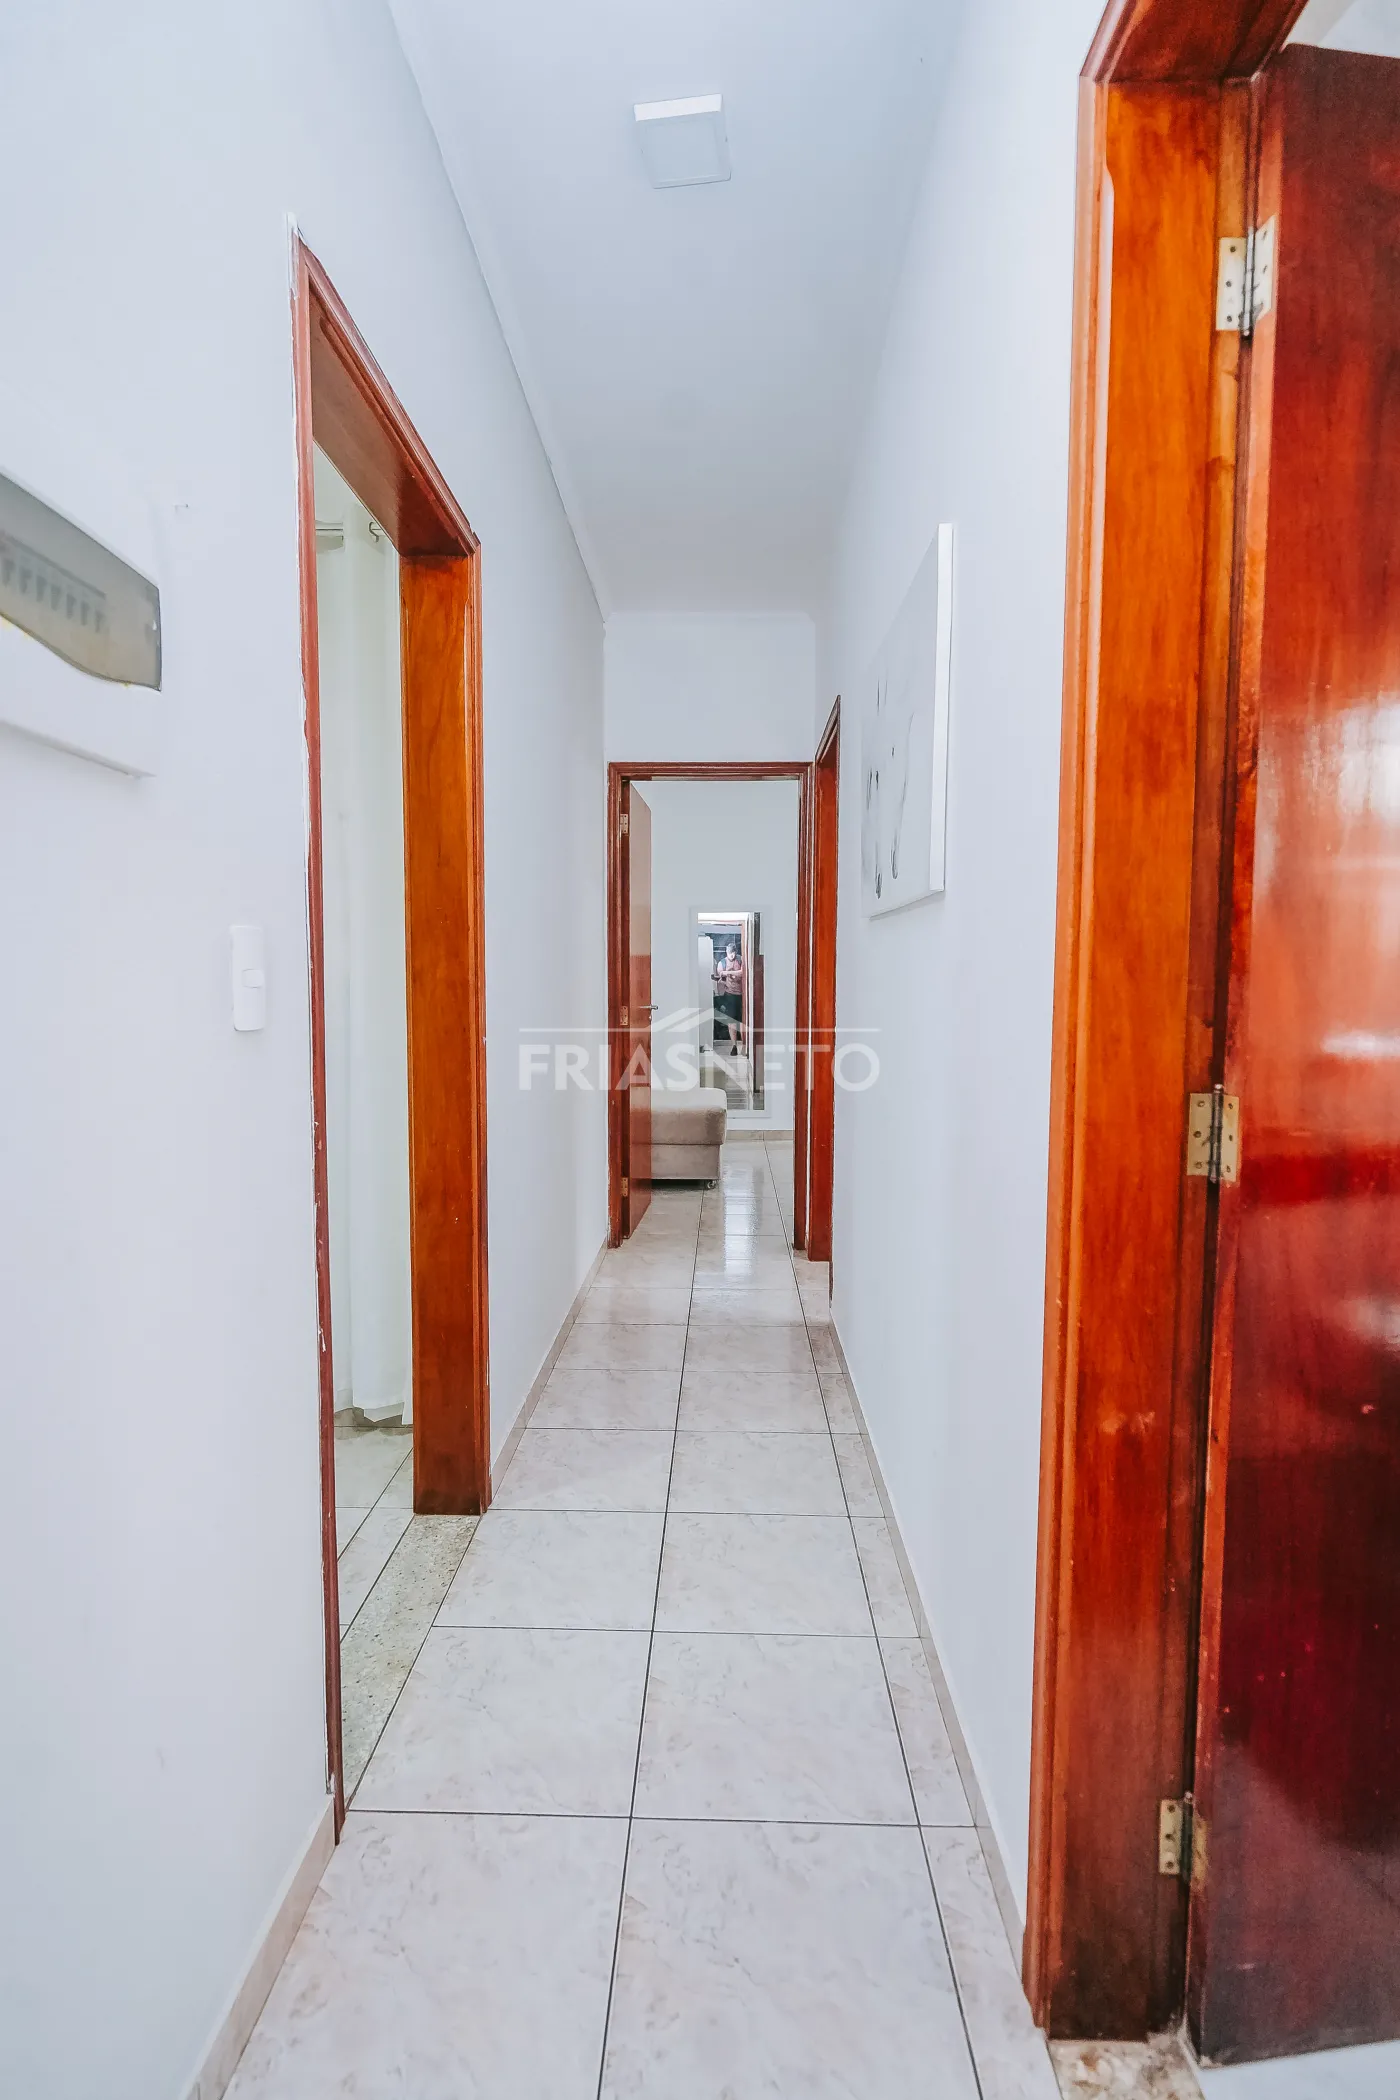 Casa para locação e venda no Terra Rica, com 3 dormitórios, sendo 1 suíte, sala, cozinha, 1 vaga coberta.